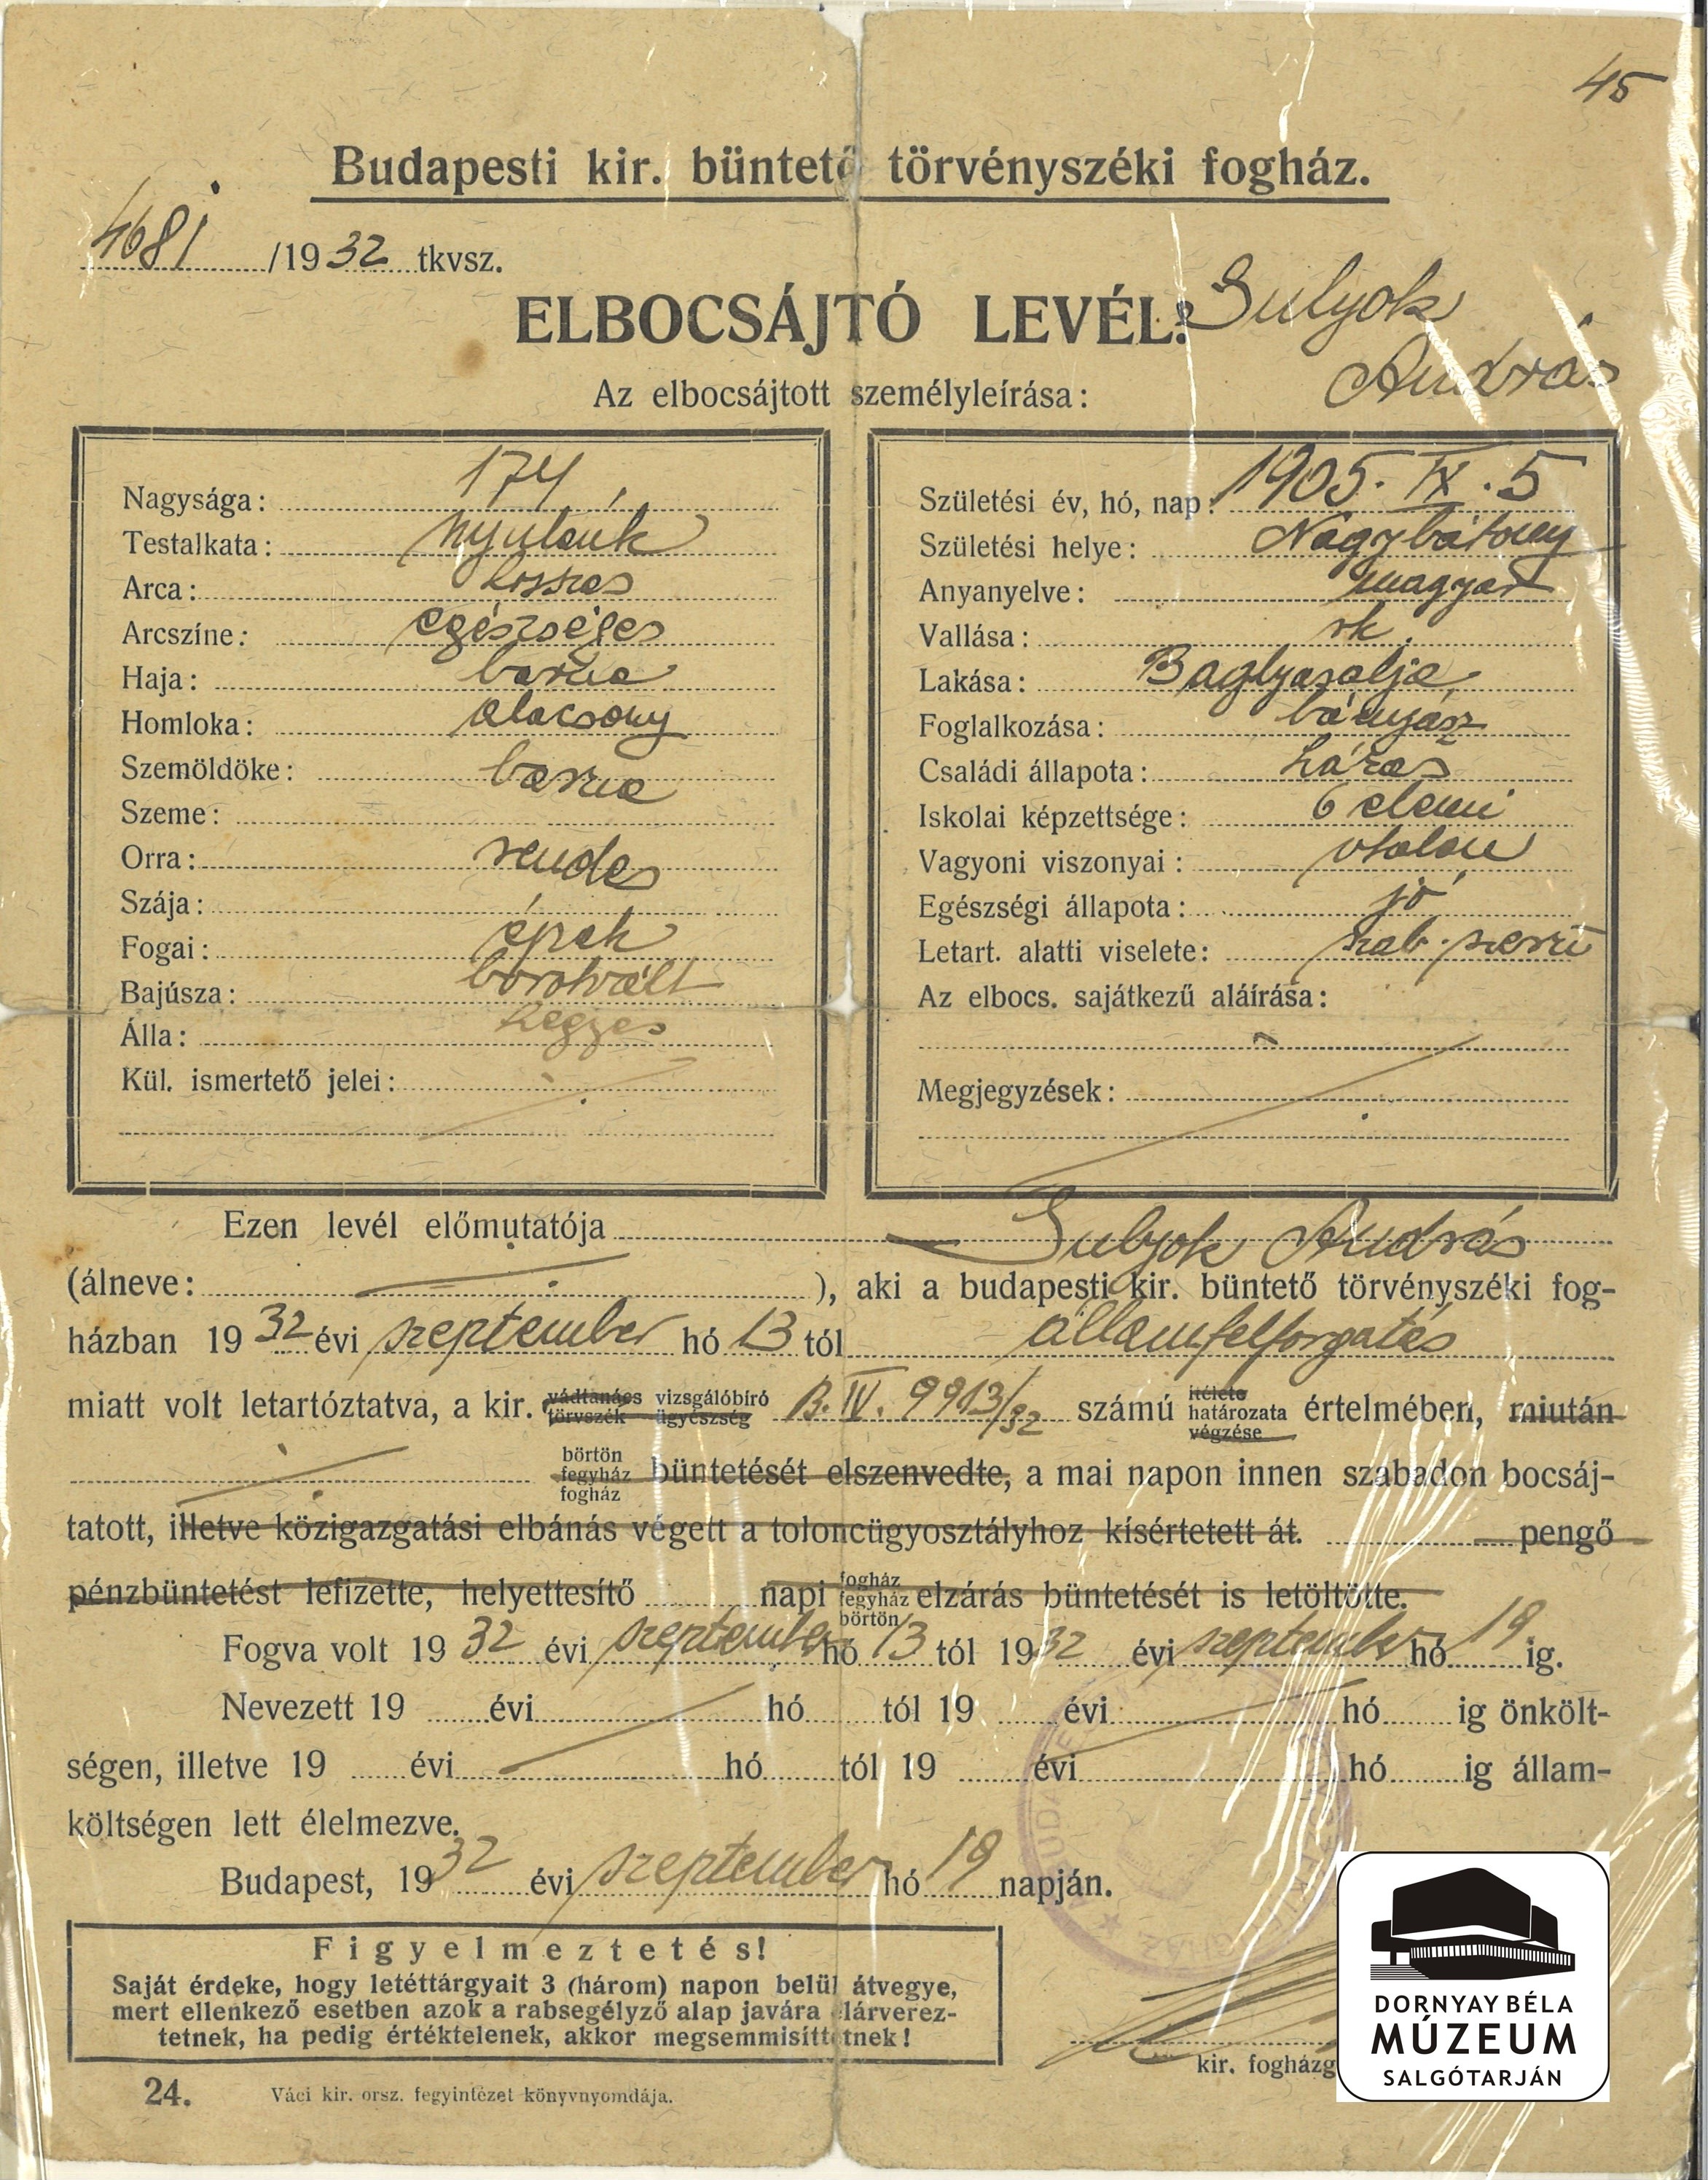 Sulyok András baglyasaljai bányász elbocsátó levele fogházból (Dornyay Béla Múzeum, Salgótarján CC BY-NC-SA)